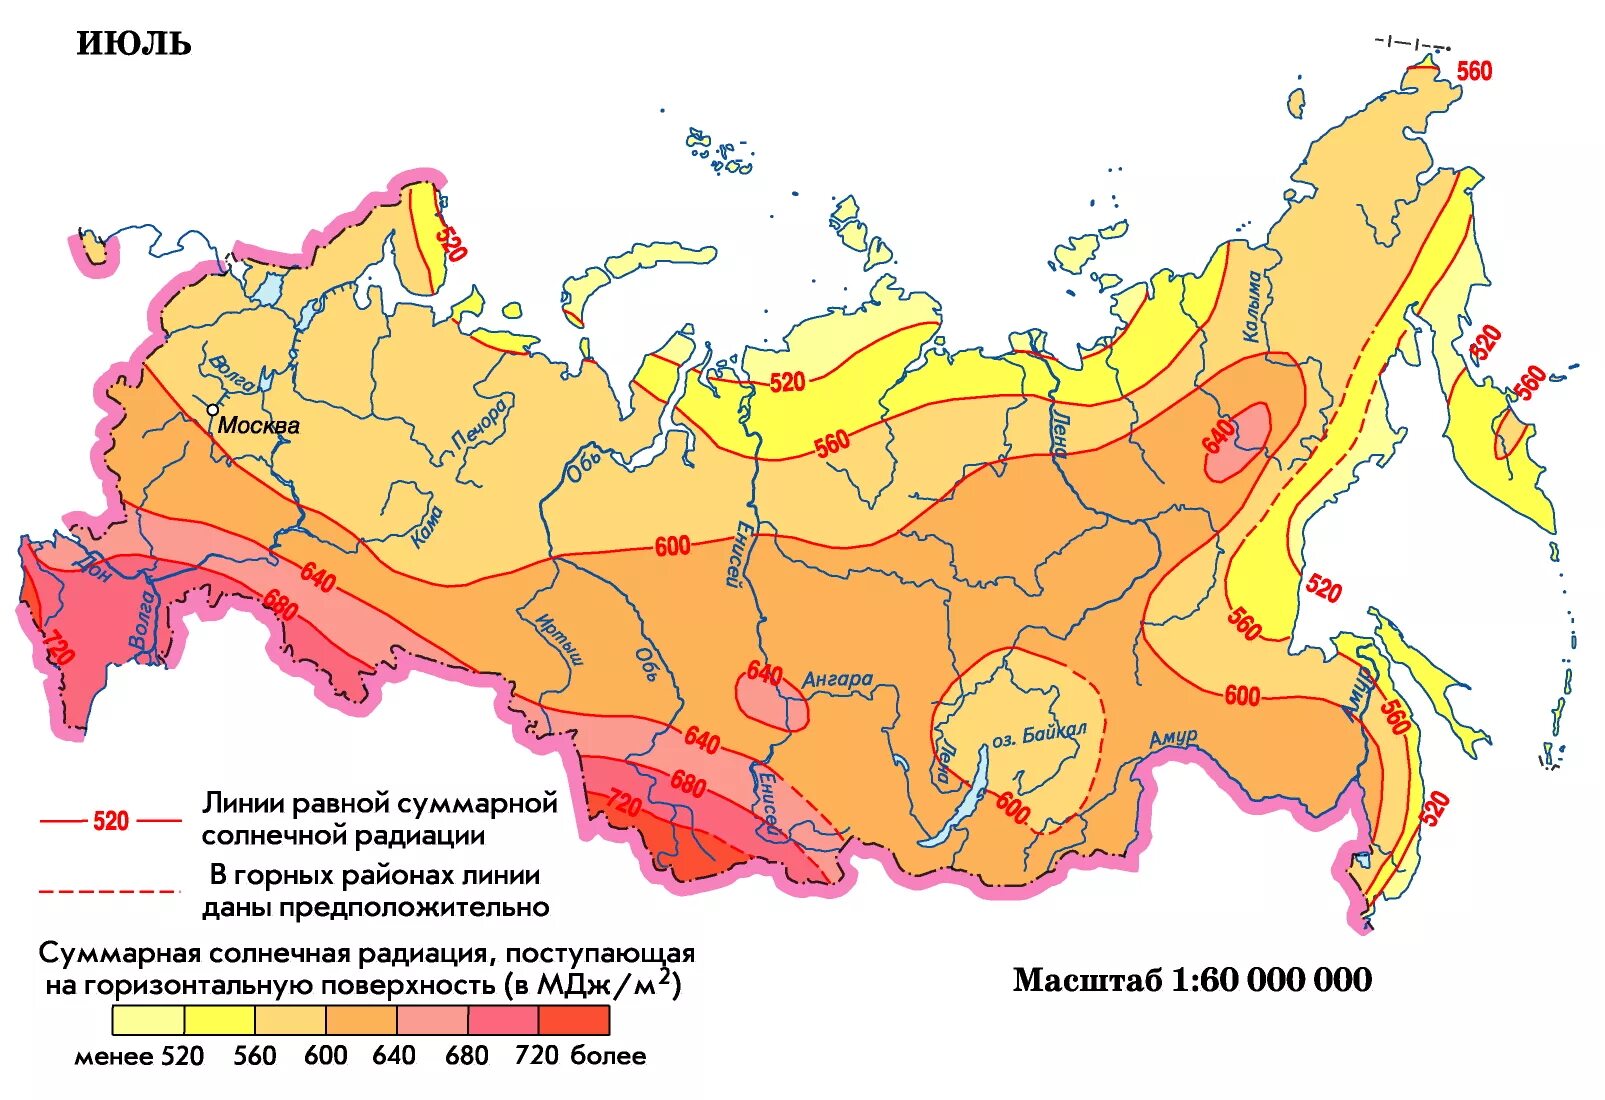 Средняя температура в тайге летом. Карта солнечной радиации России. Карта распределения солнечной радиации. Суммарная Солнечная радиация на территории России. Карта суммарной солнечной радиации России.